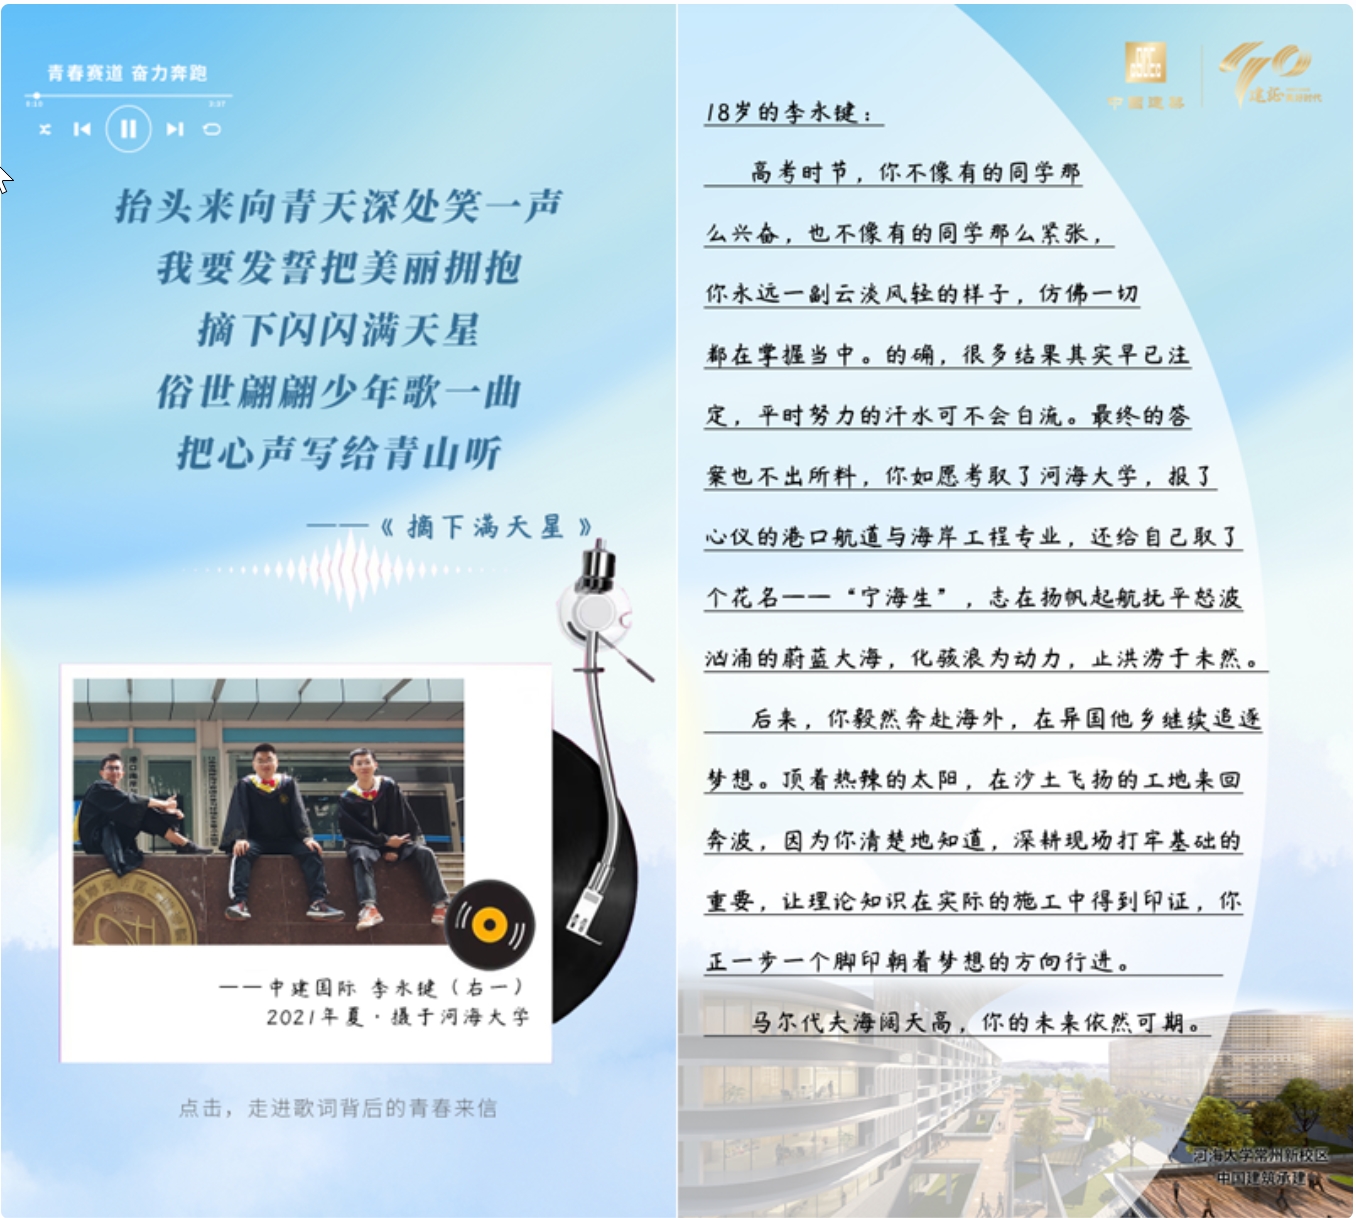 [交通]京杭运河杭州段二通道建成通航 打通浙江内河千吨级航道网要害堵点